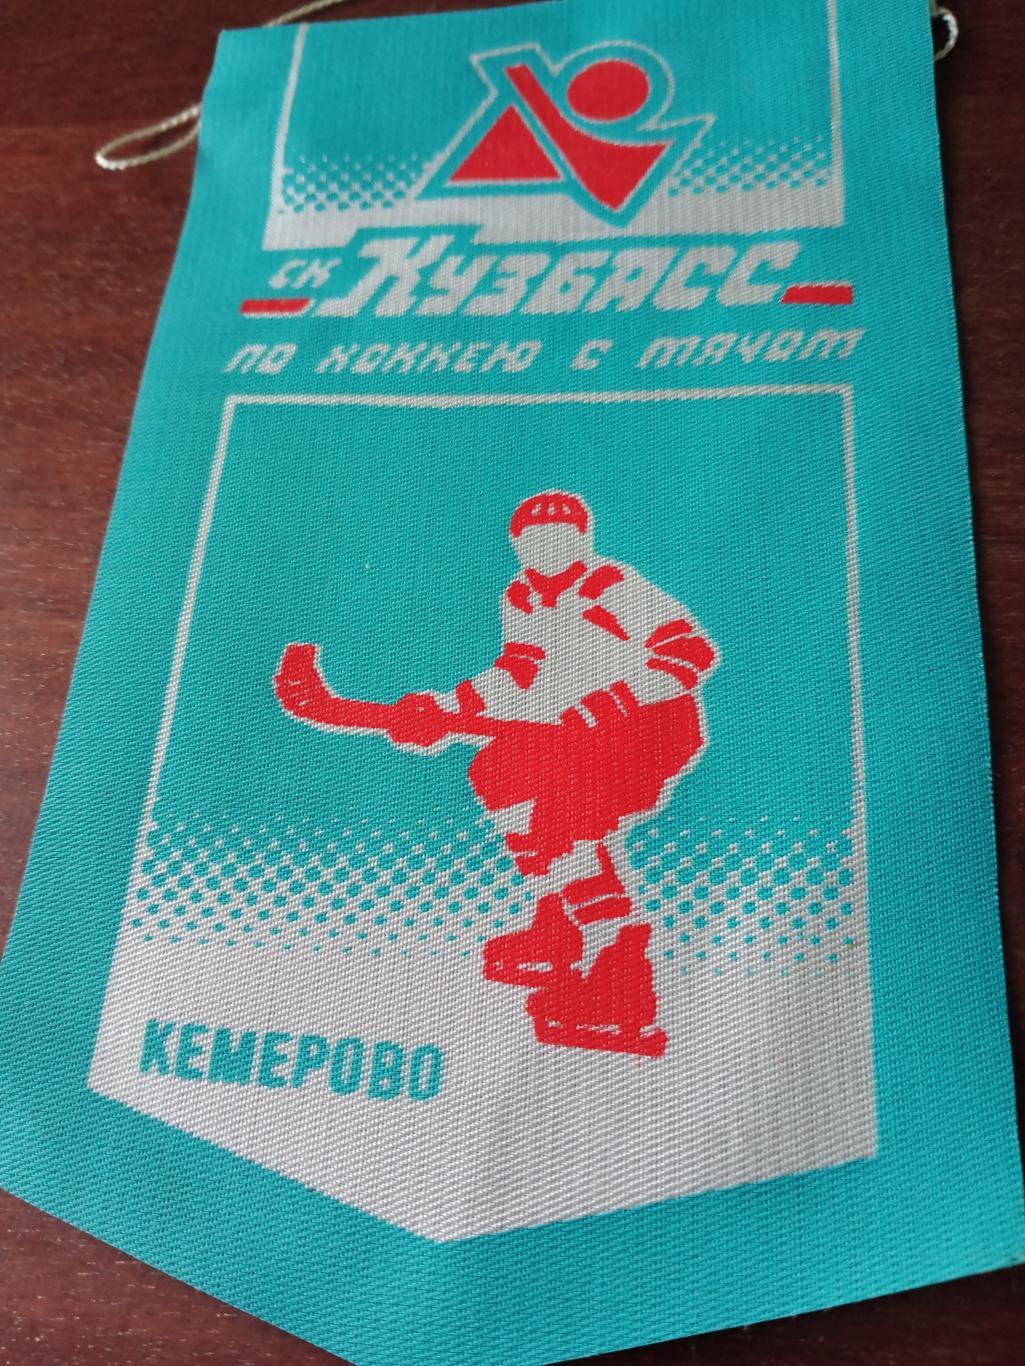 Вымпел. Хоккей с мячом. Кузбасс Кемерово